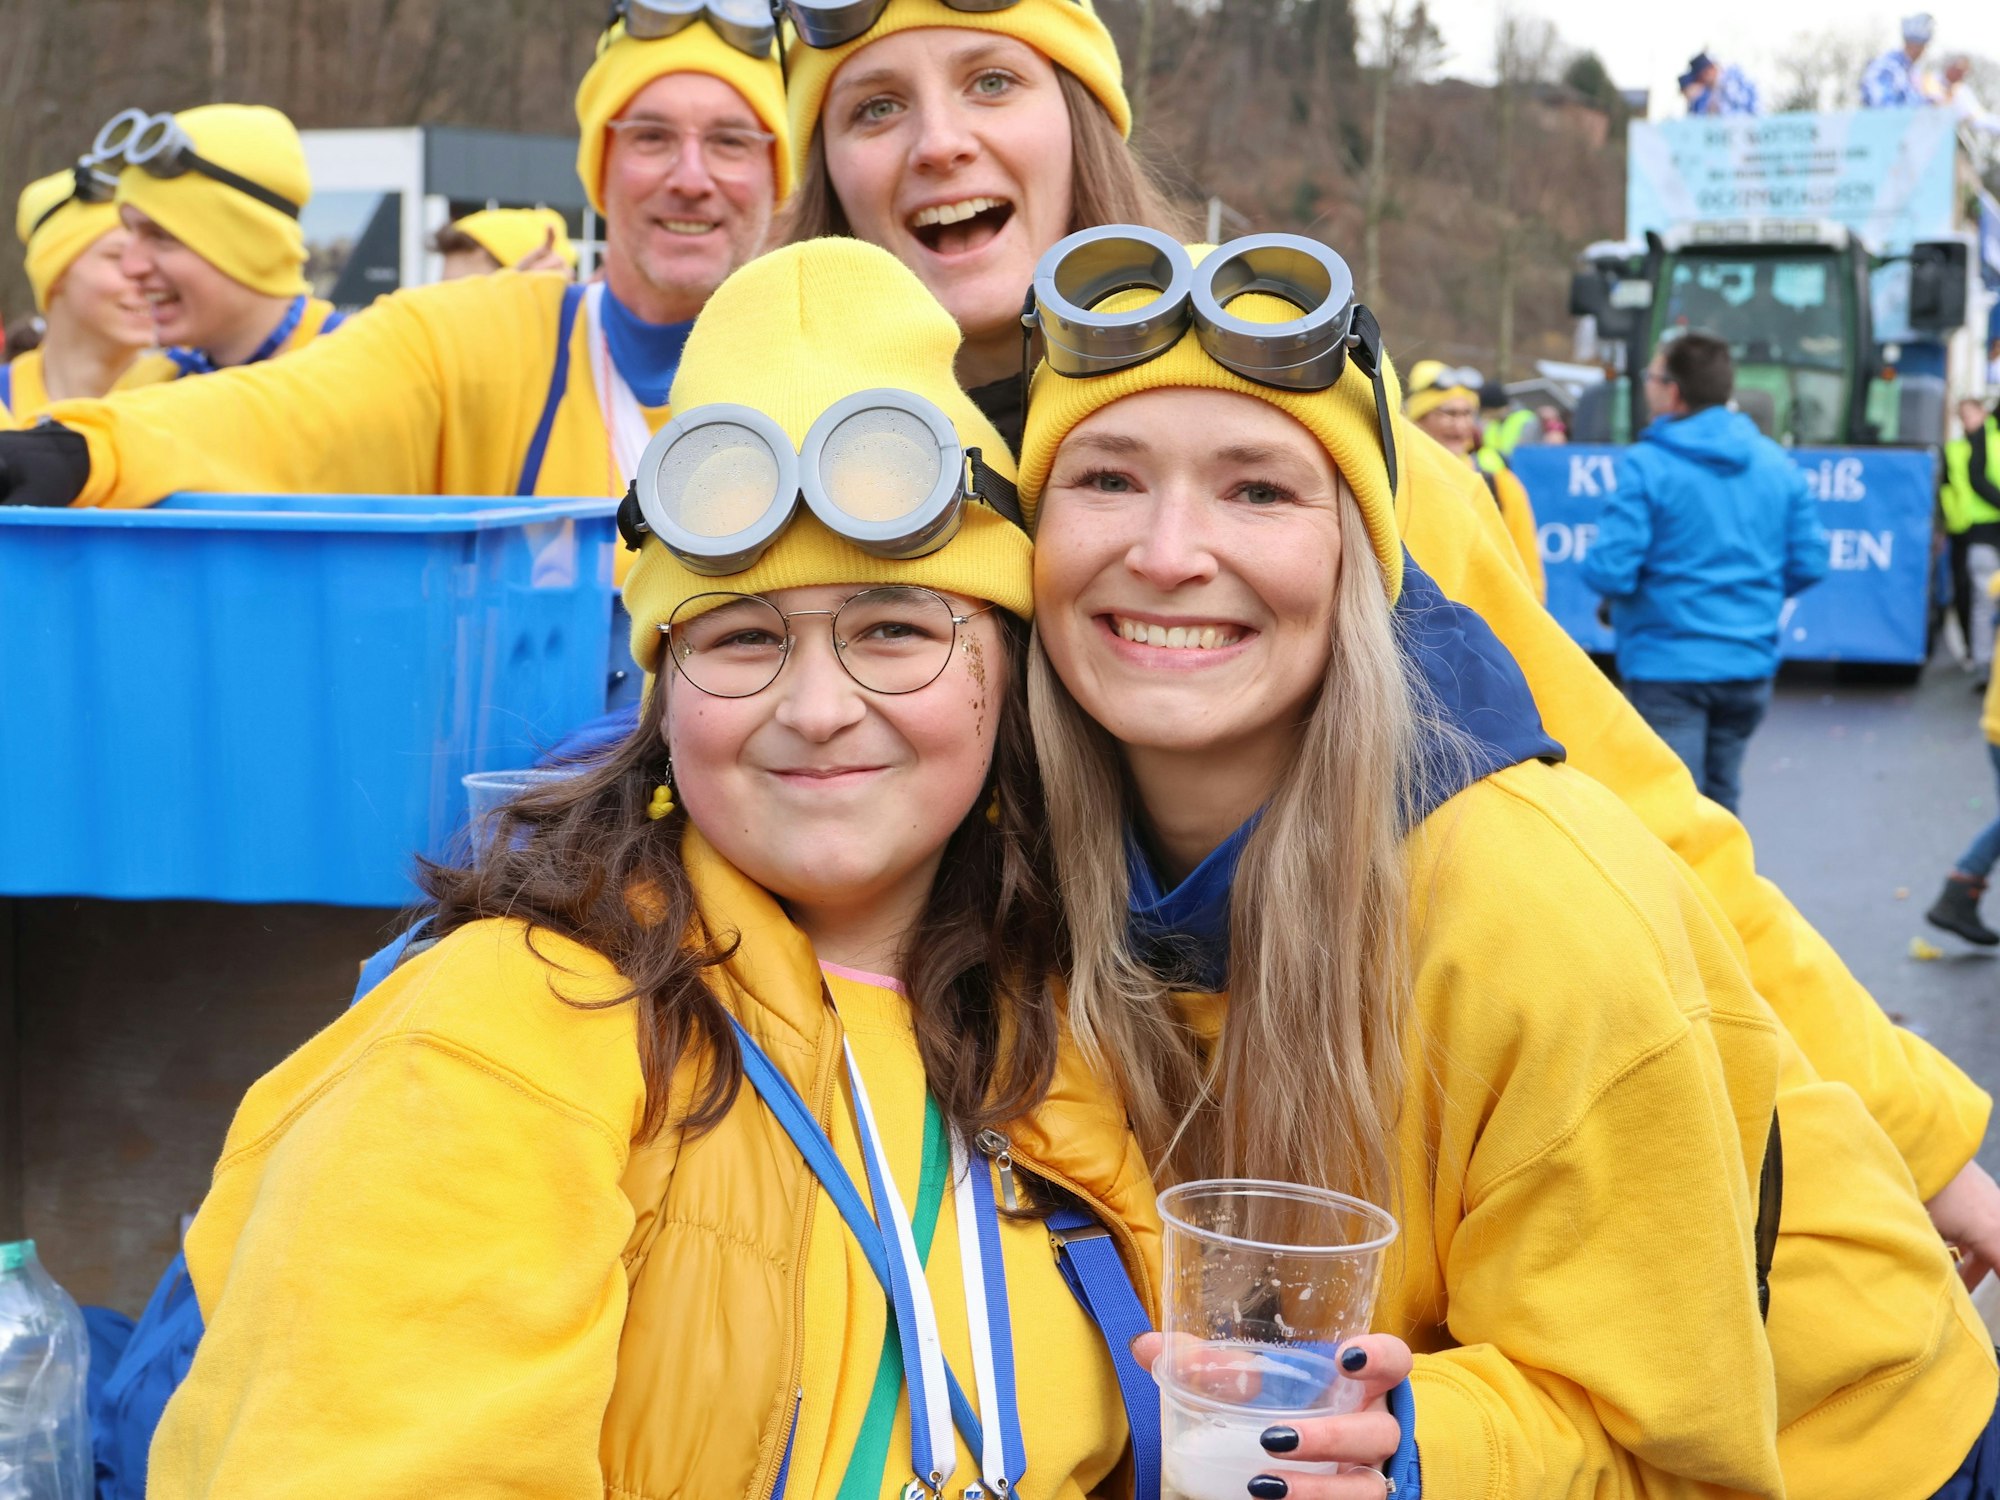 Zwei junge Frauen mit dicken Brillen und gelben Mützen.